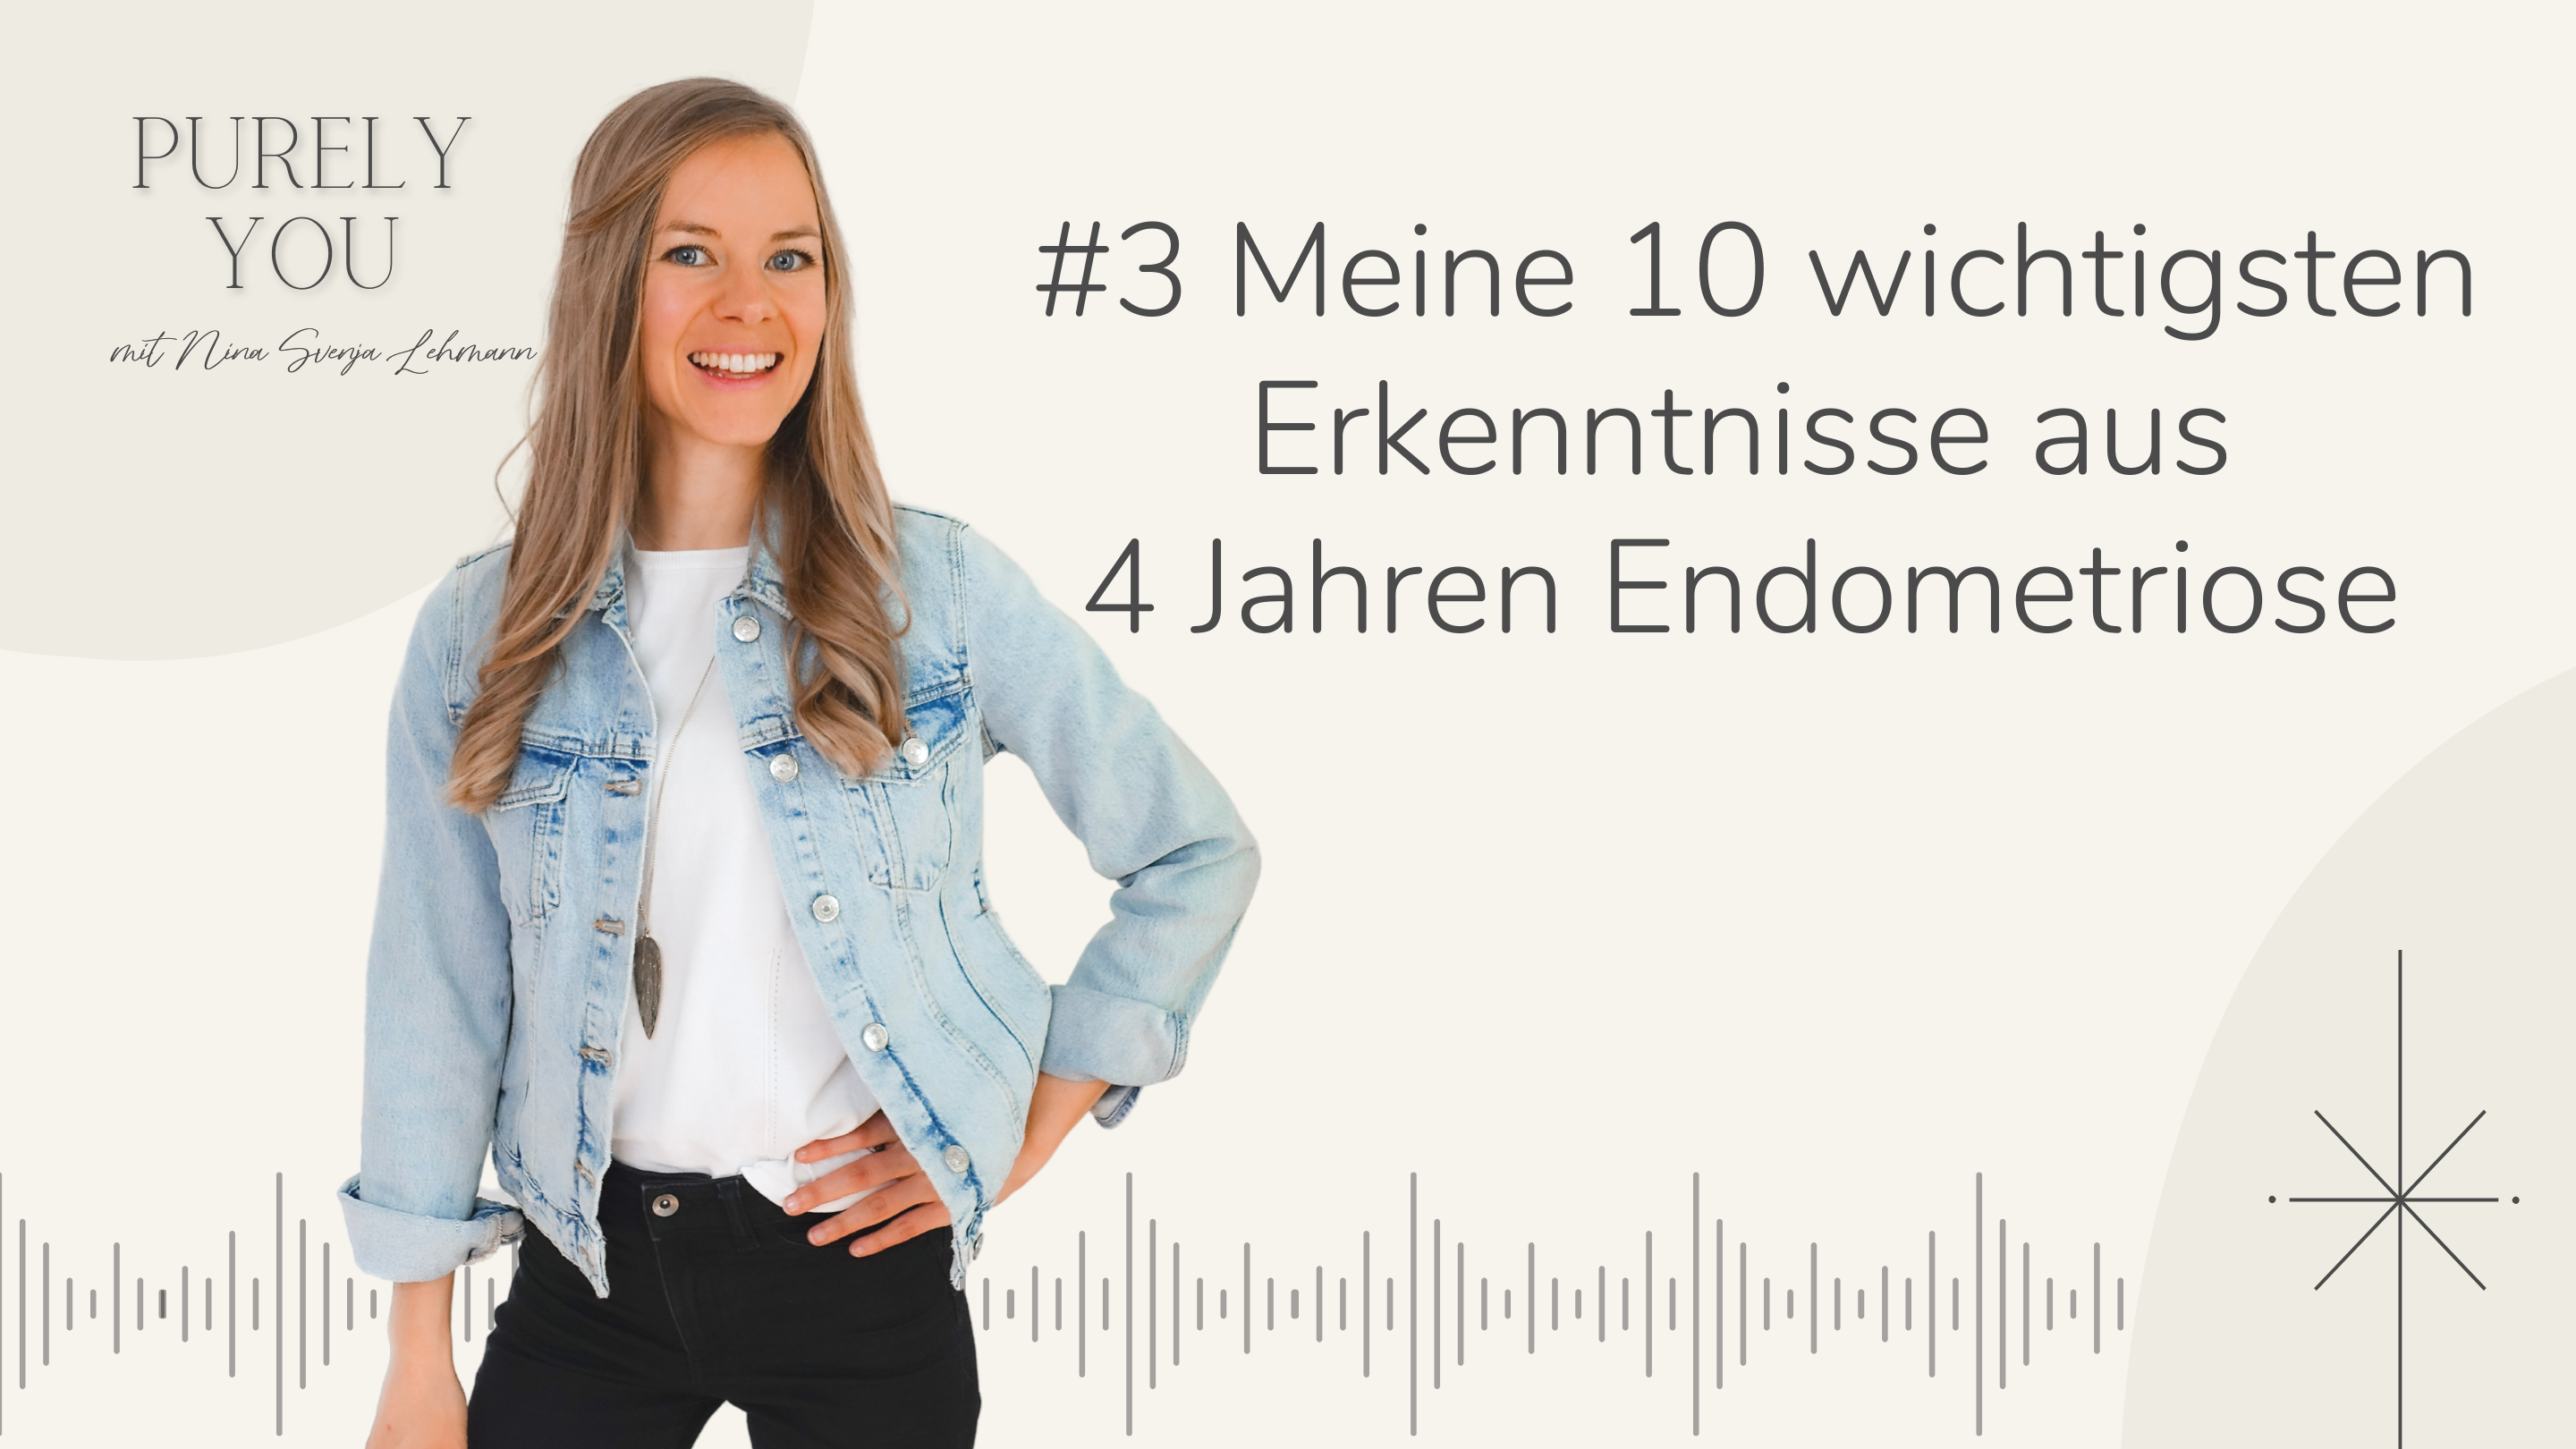 Purely You Podcast Nina Svenja Lehmann Meine 10 wichtigsten Erkenntnisse aus 4 Jahren Endometriose